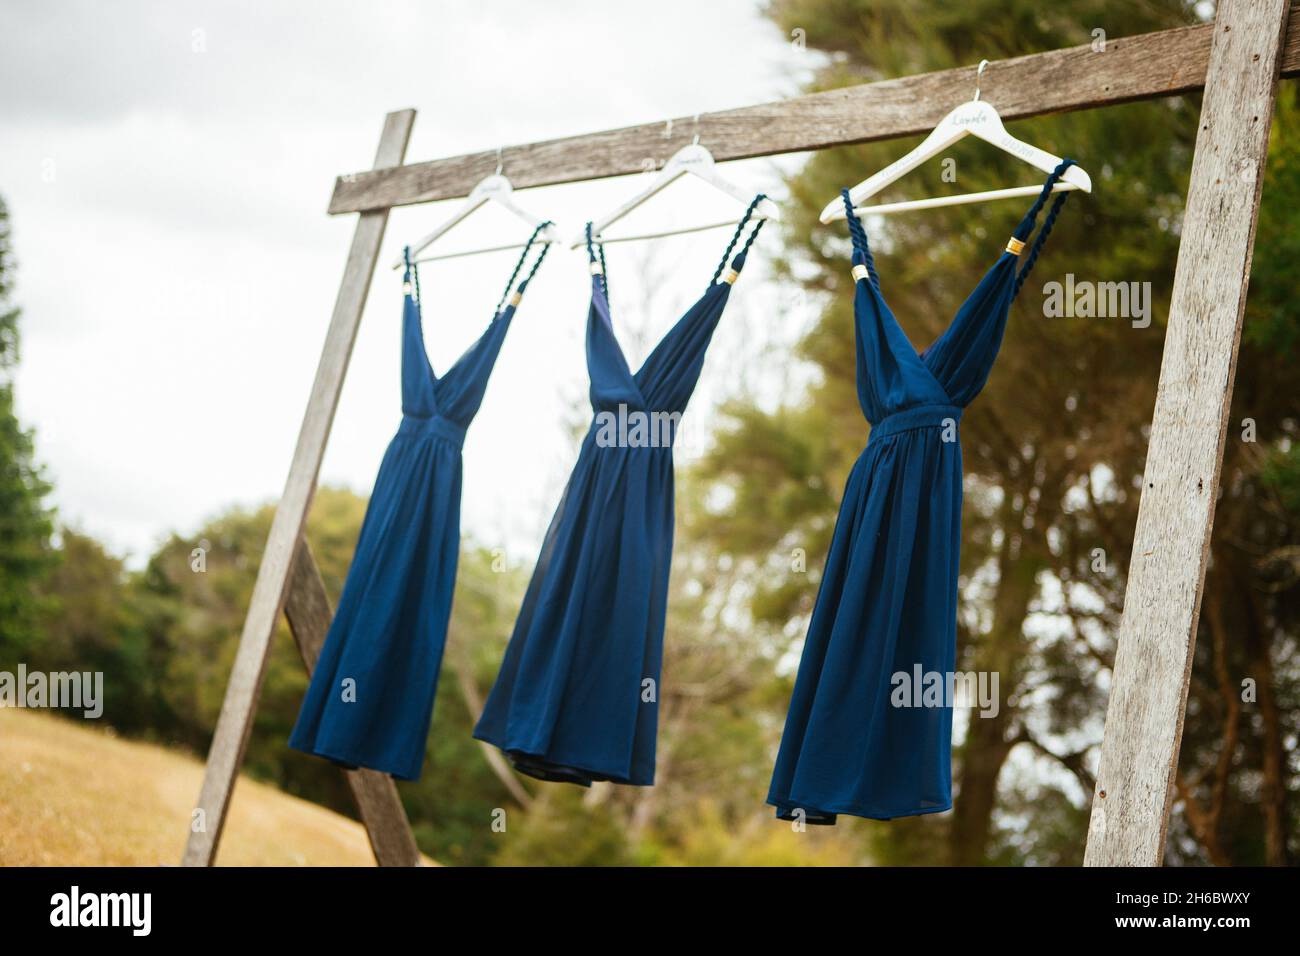 CANAKKALE, TURQUIE - 02 févr. 2019: Trois robes bleues semblables accrochées à l'extérieur dans la ya Banque D'Images